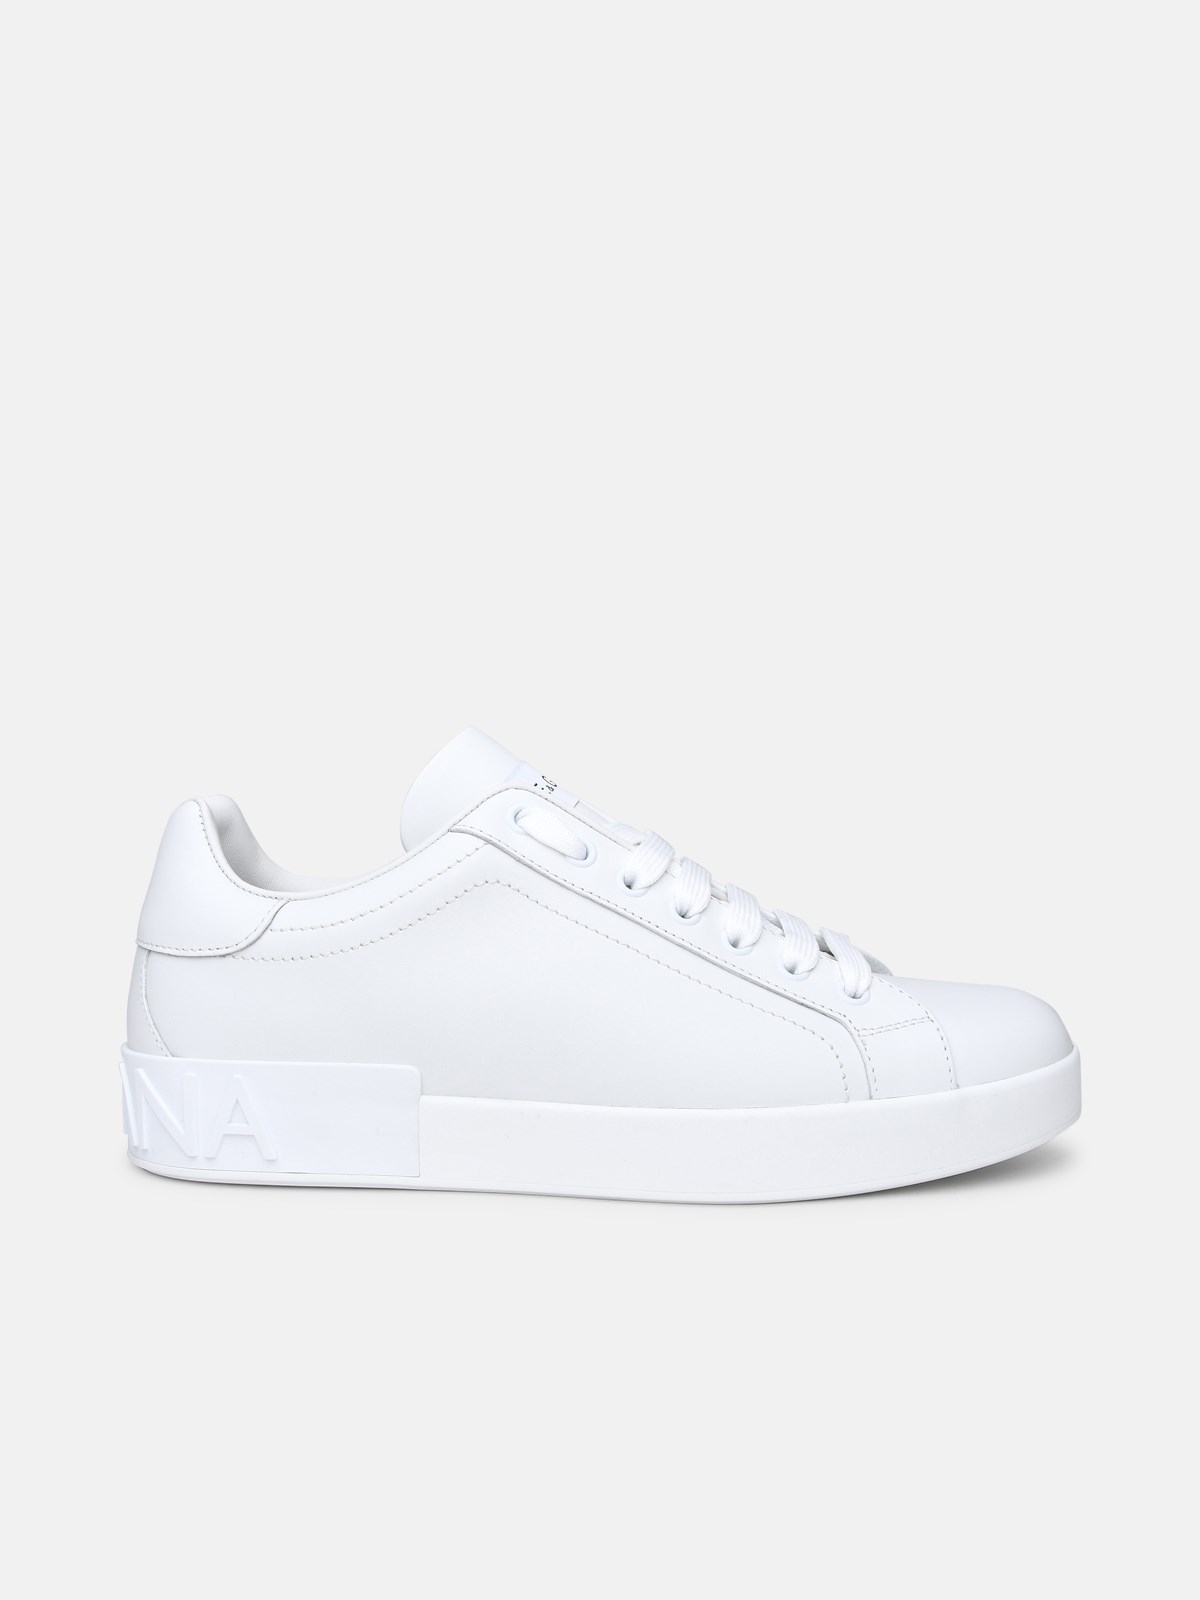 Dolce & Gabbana Portofino White Leather Sneakers